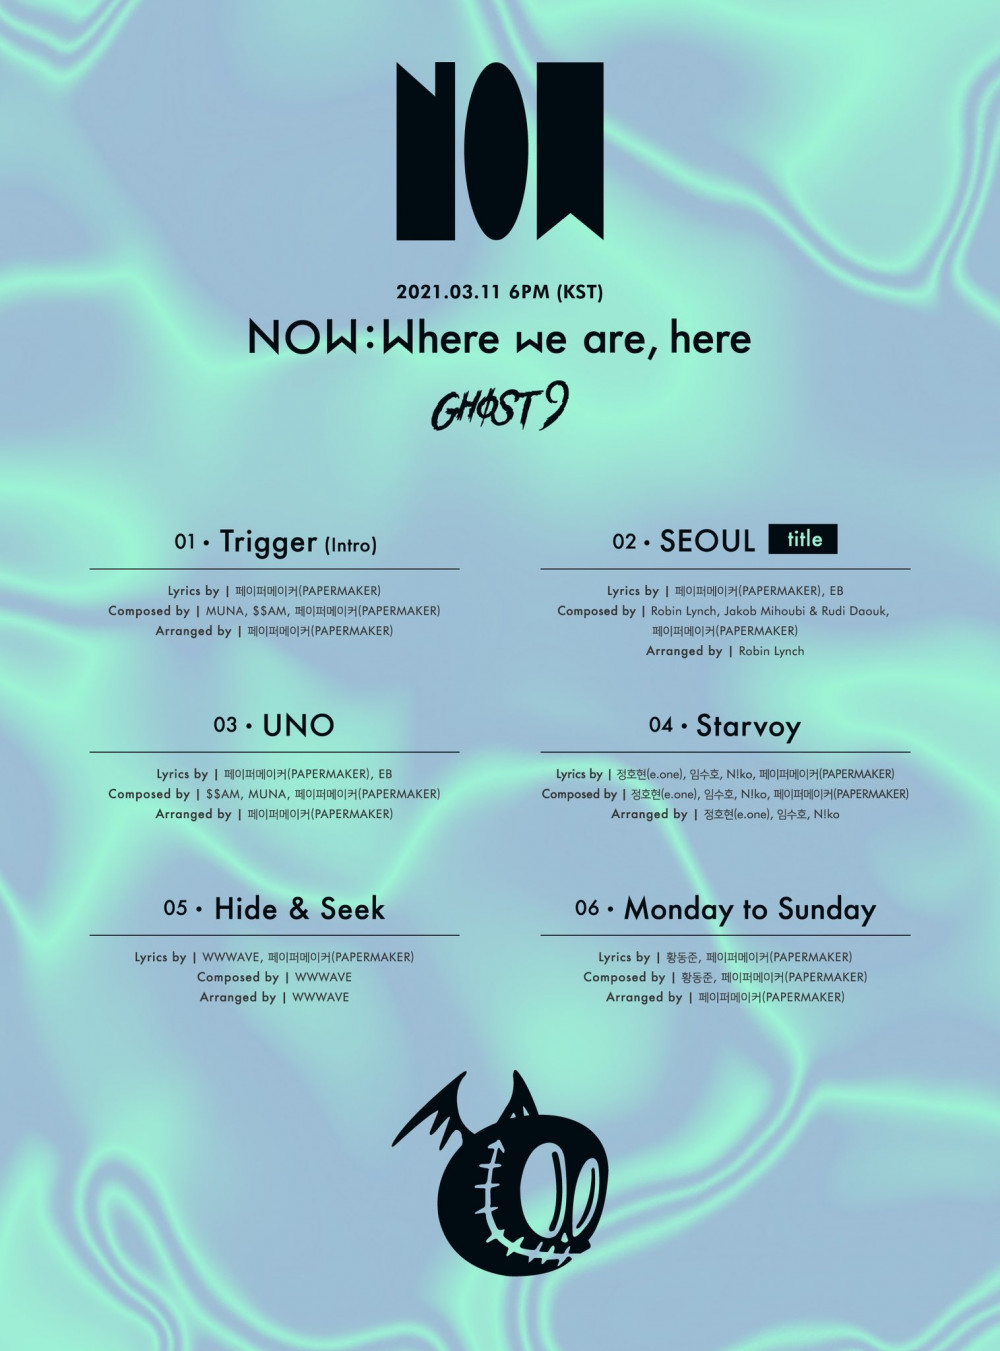 [Камбэк] Ghost9 альбом "NOW: Where we are, here": музыкальный клип "Seoul"